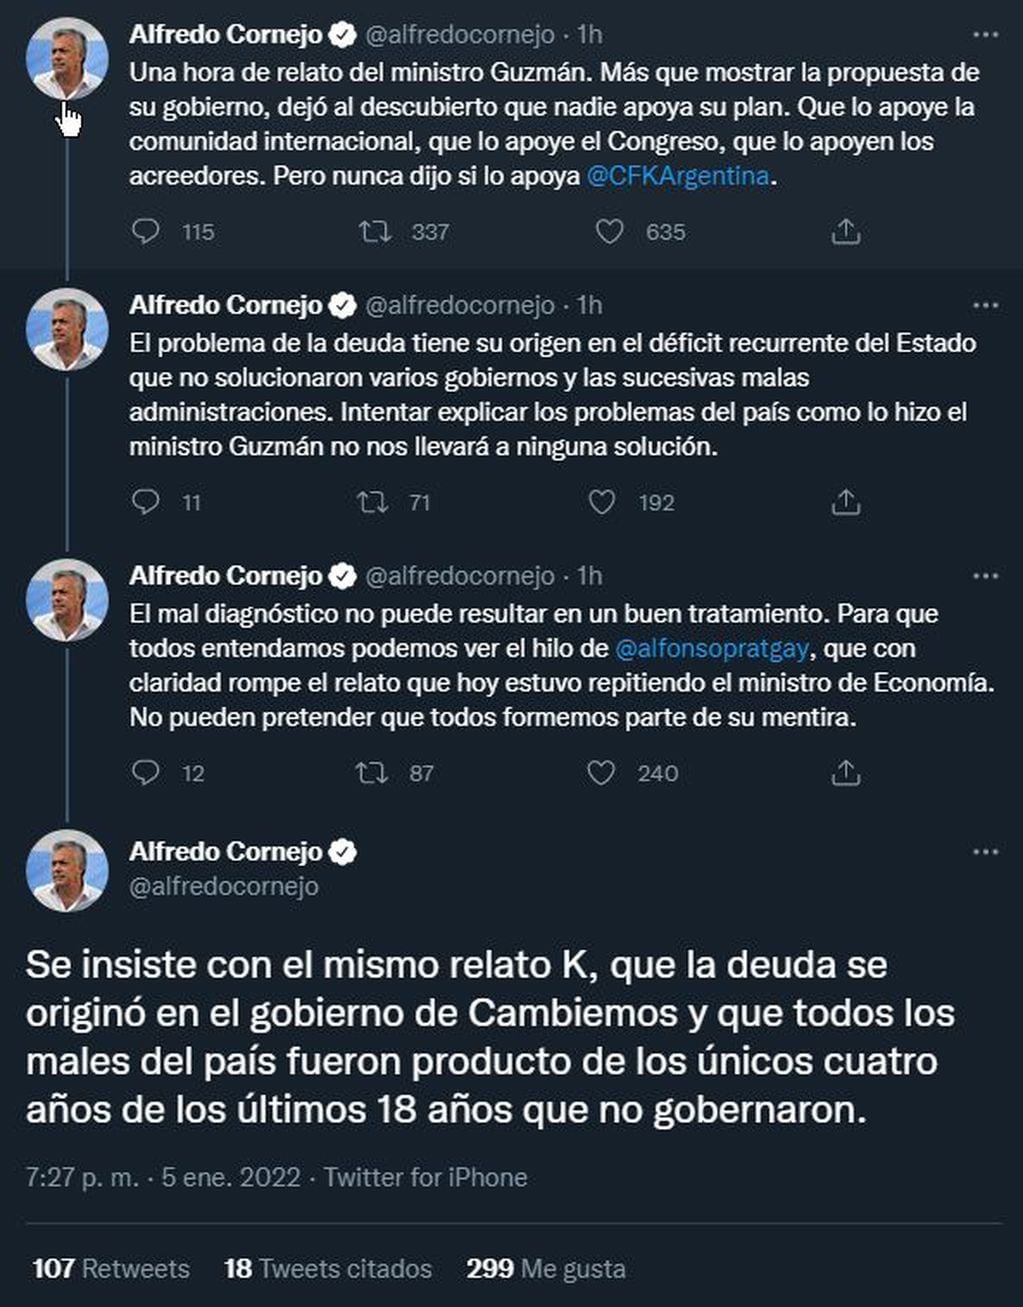 Vía Twitter, el senador nacional Alfredo Cornejo criticó la exposición del ministro de Economía, Martín Guzmán.